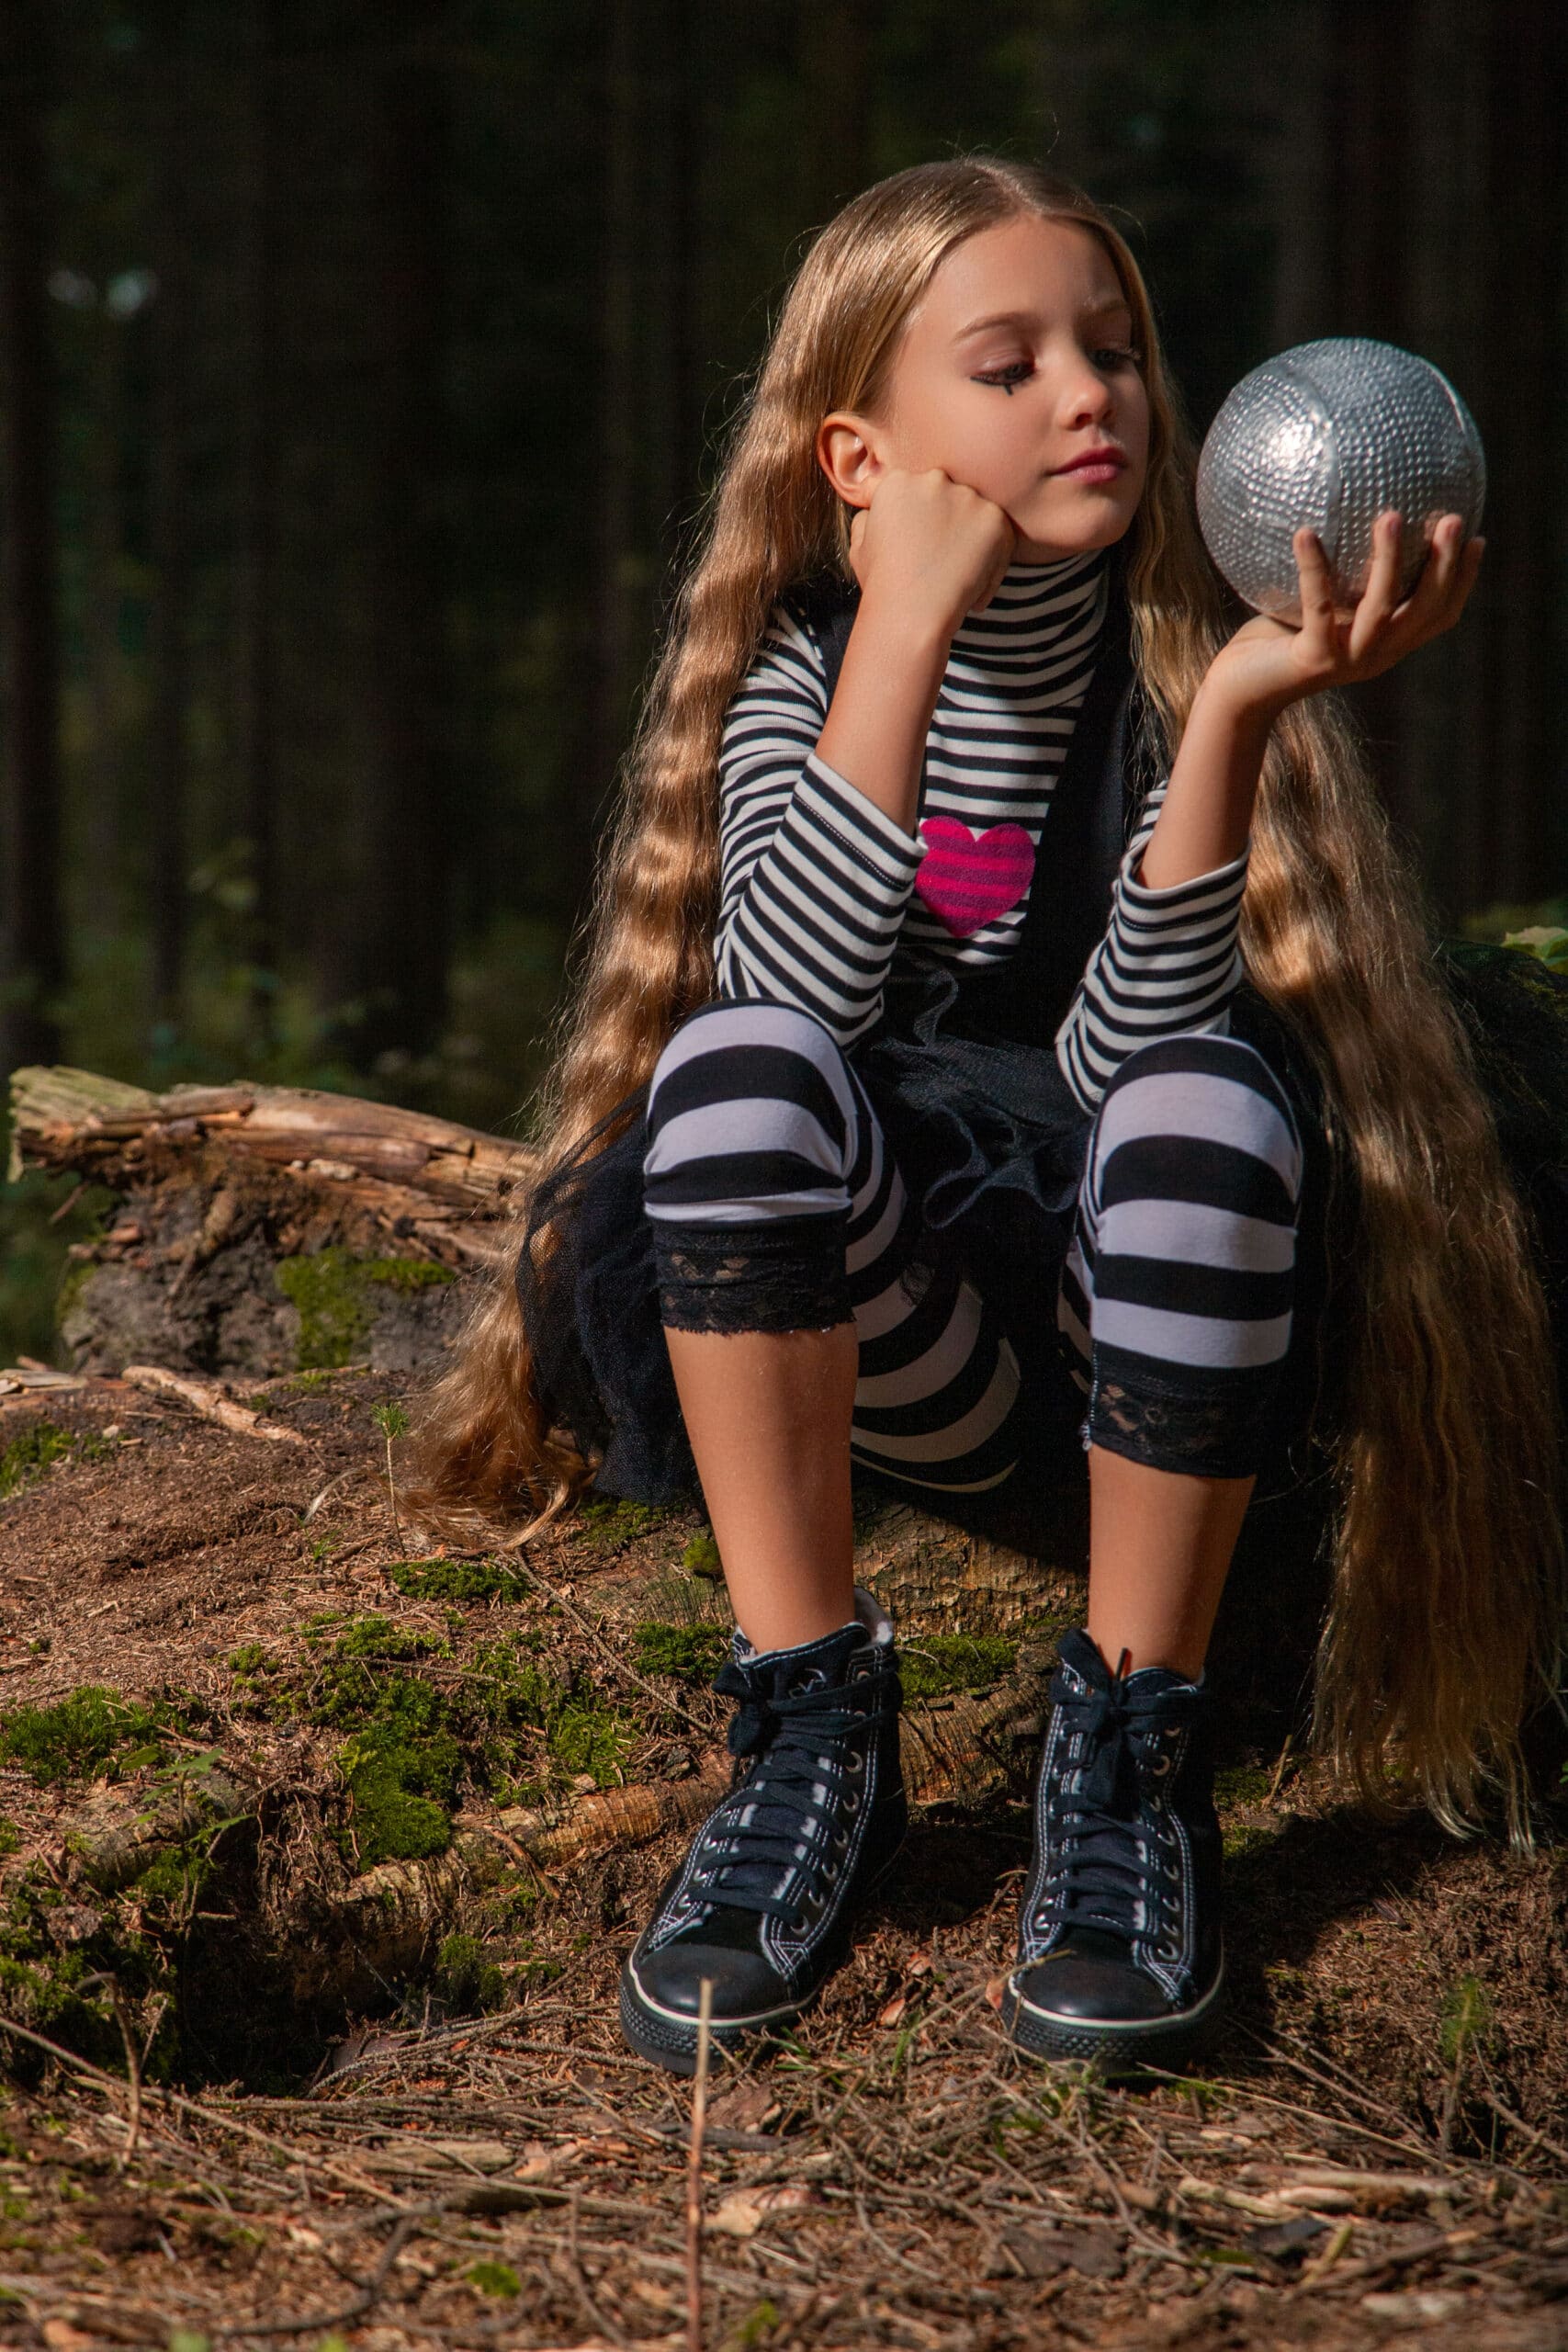 Ein junges Mädchen mit langen Haaren sitzt auf einem Baumstamm in einem Wald und blickt nachdenklich auf eine glänzende Discokugel, die sie in den Händen hält. Sie trägt ein gestreiftes Outfit mit passenden Knieschützern und High-Top-Sneakers. © Fotografie Tomas Rodriguez